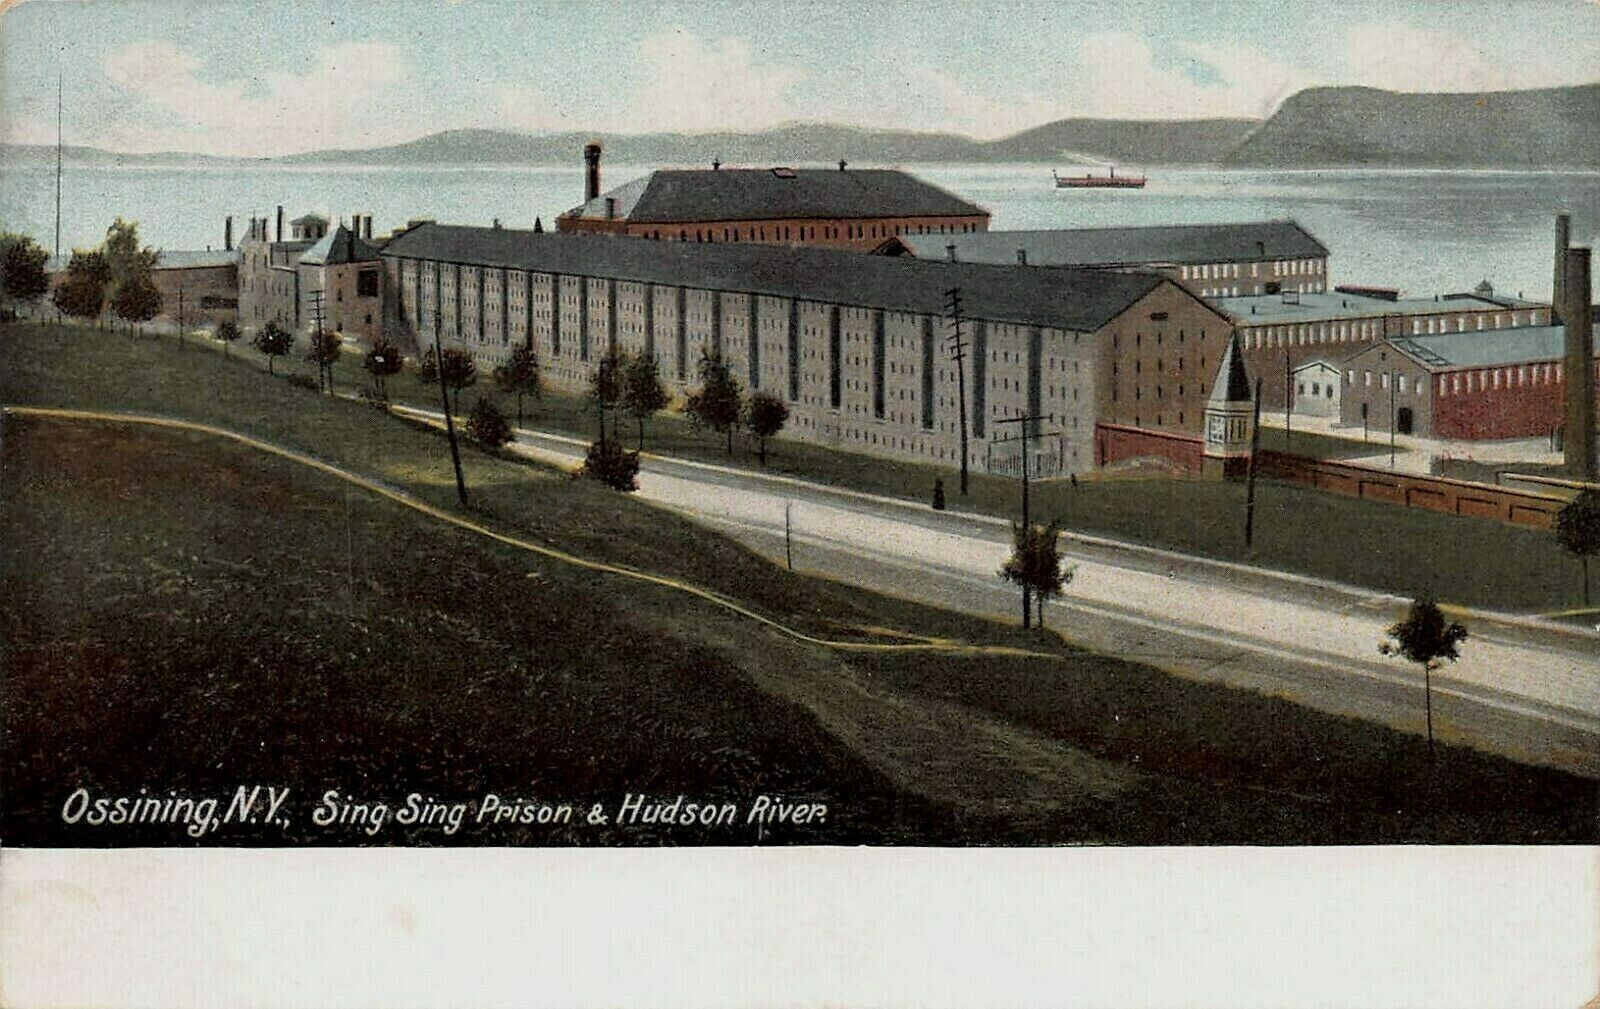 Sing Sing Prison & Hudson River, Ossining, N.Y., Very Early Postcard, Unused